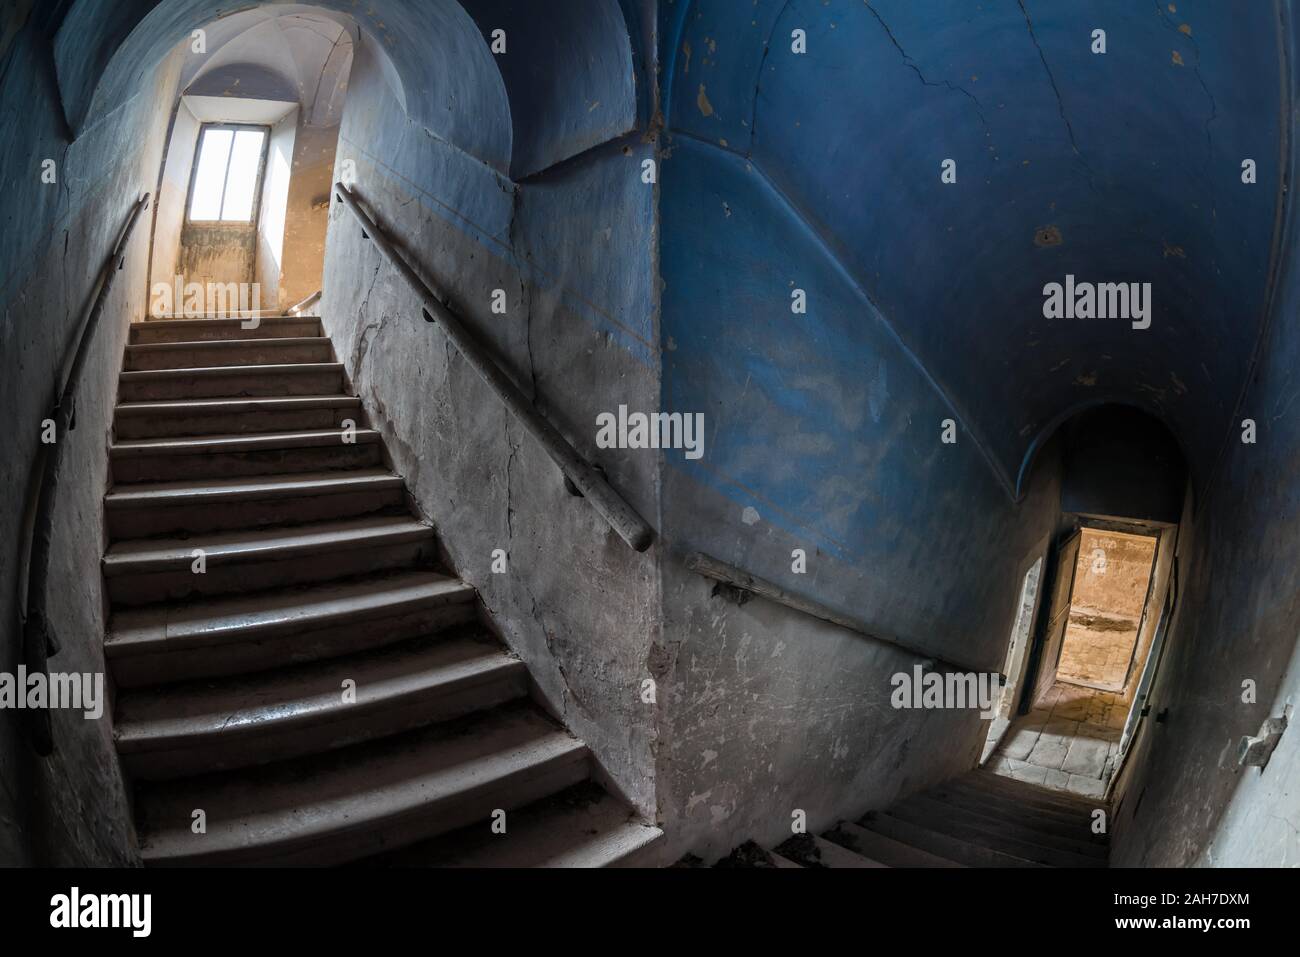 Vue imprenable sur un ancien escalier en pierre du monastère avec murs en plâtre bleu Banque D'Images